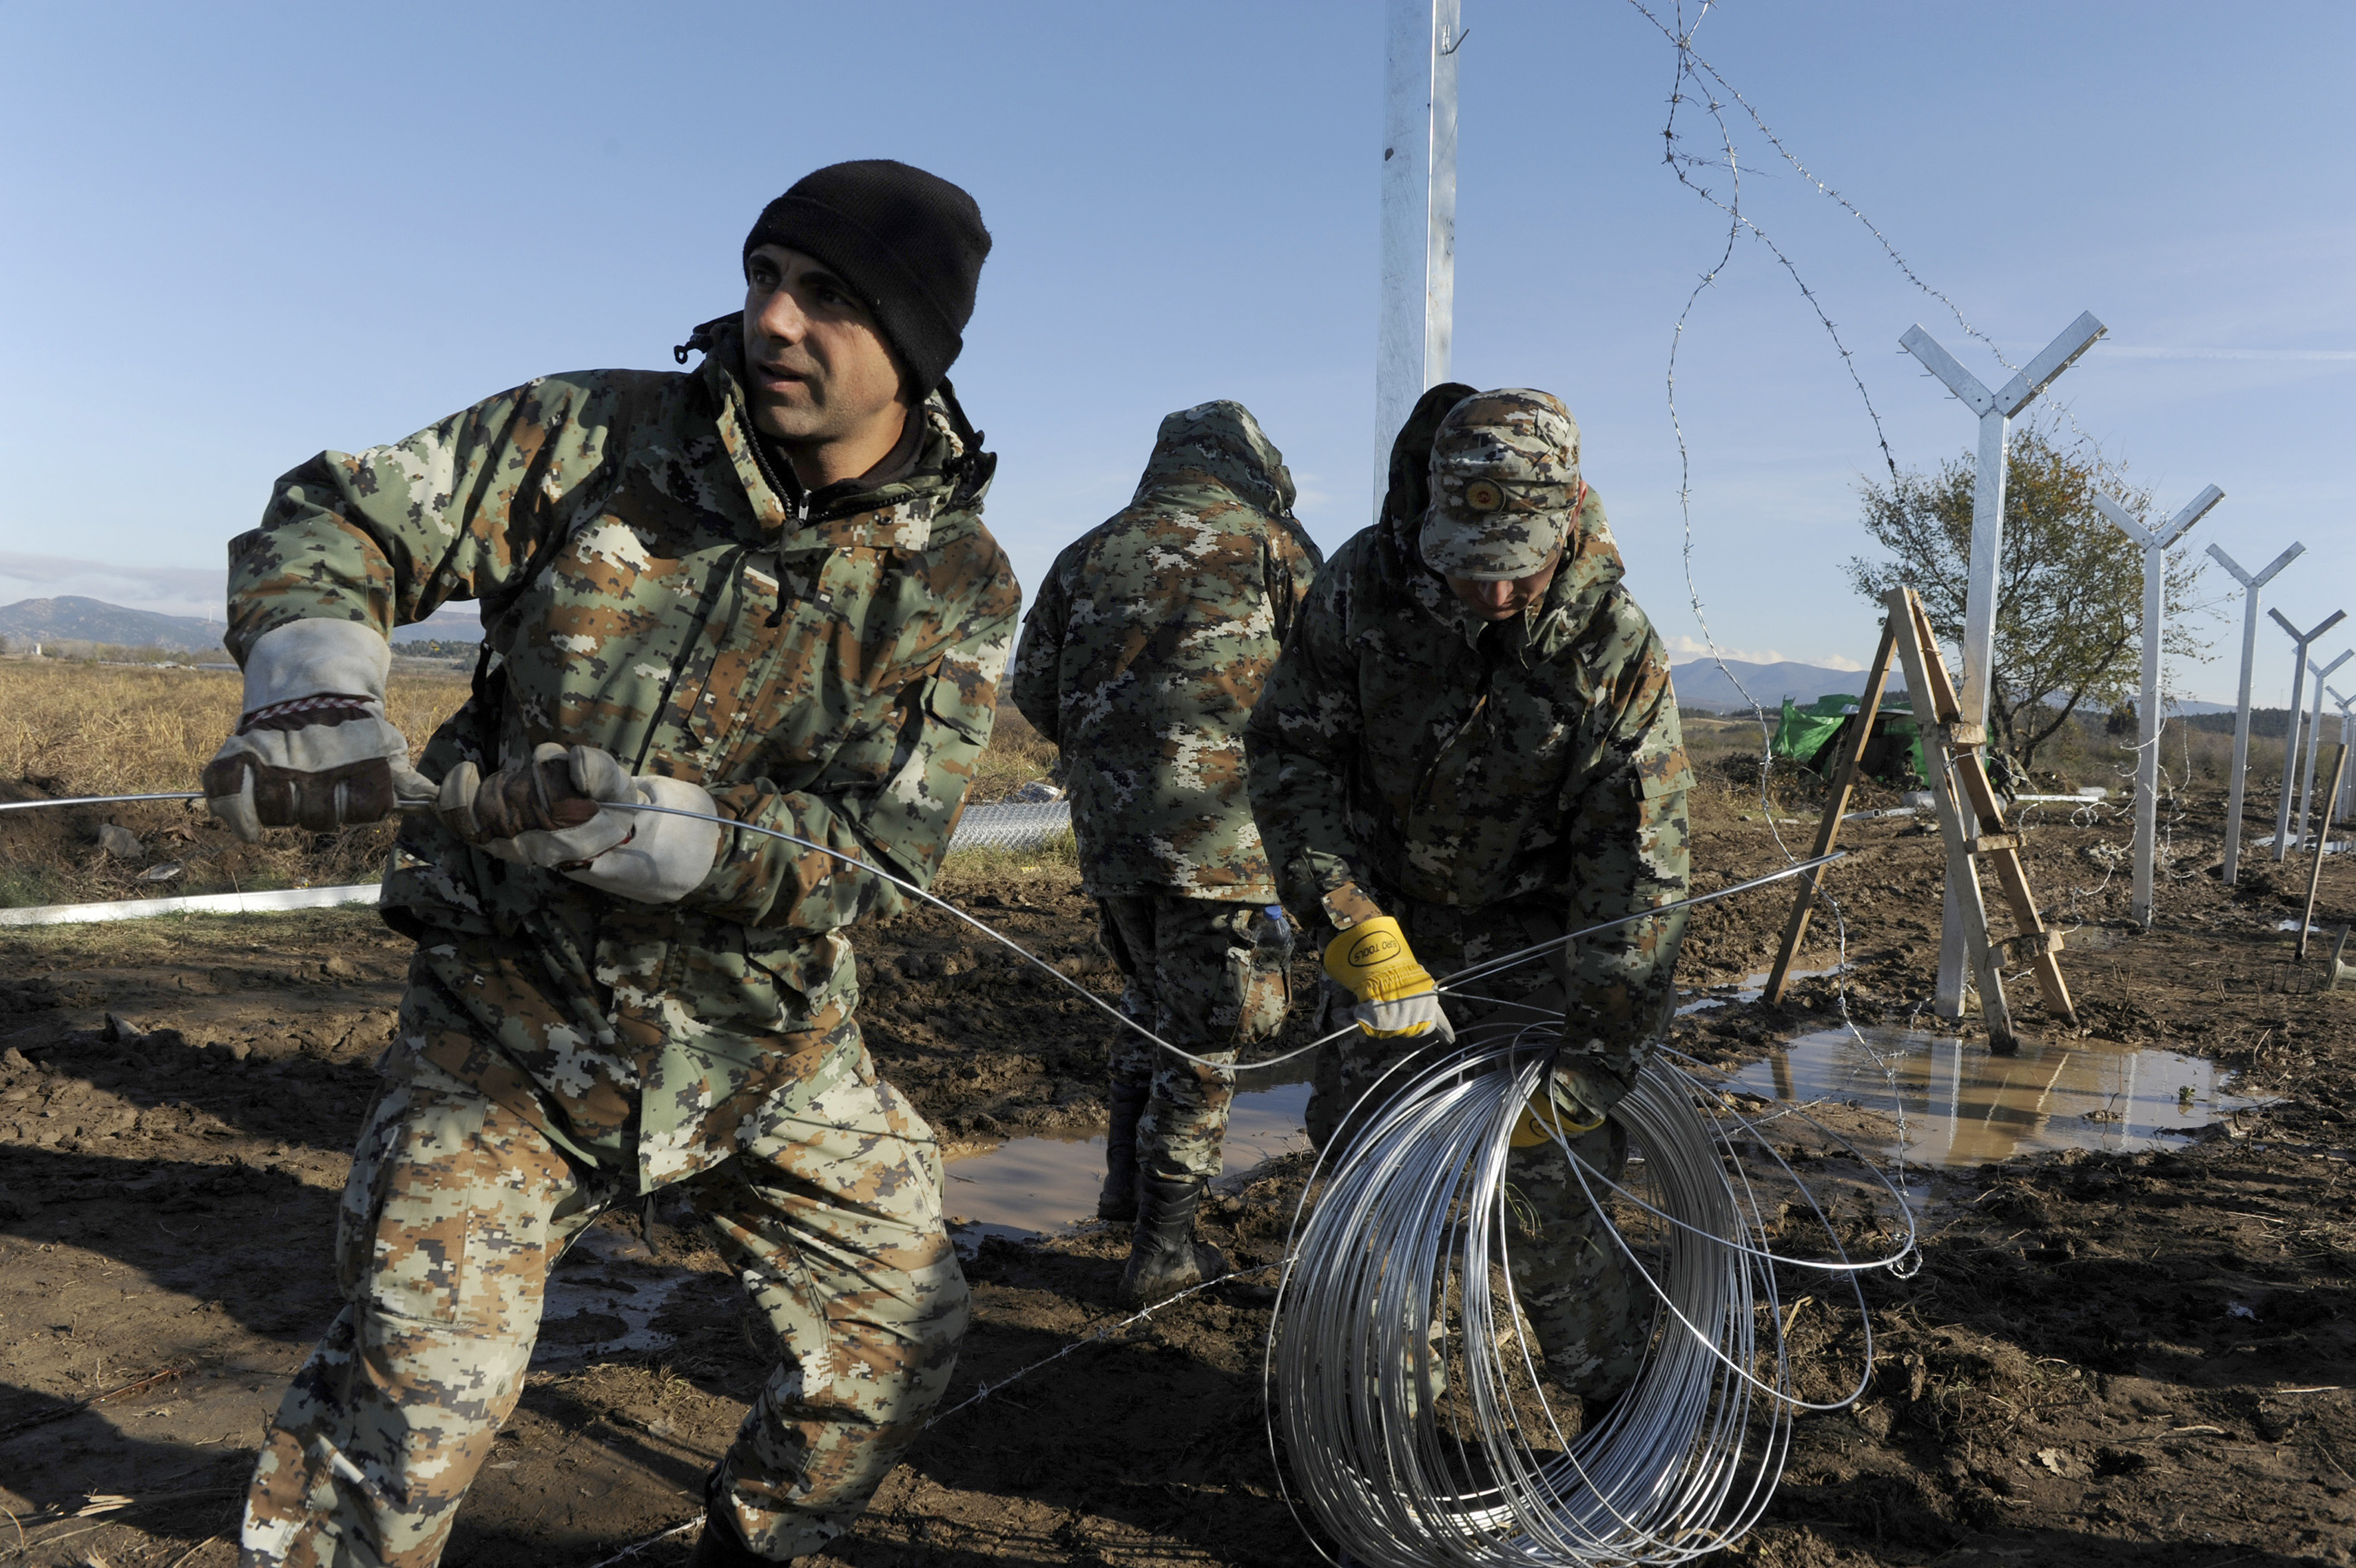 πΓΔΜ: Ο στρατός άρχισε την ανέγερση μεταλλικού φράκτη στα νότια σύνορα της χώρας